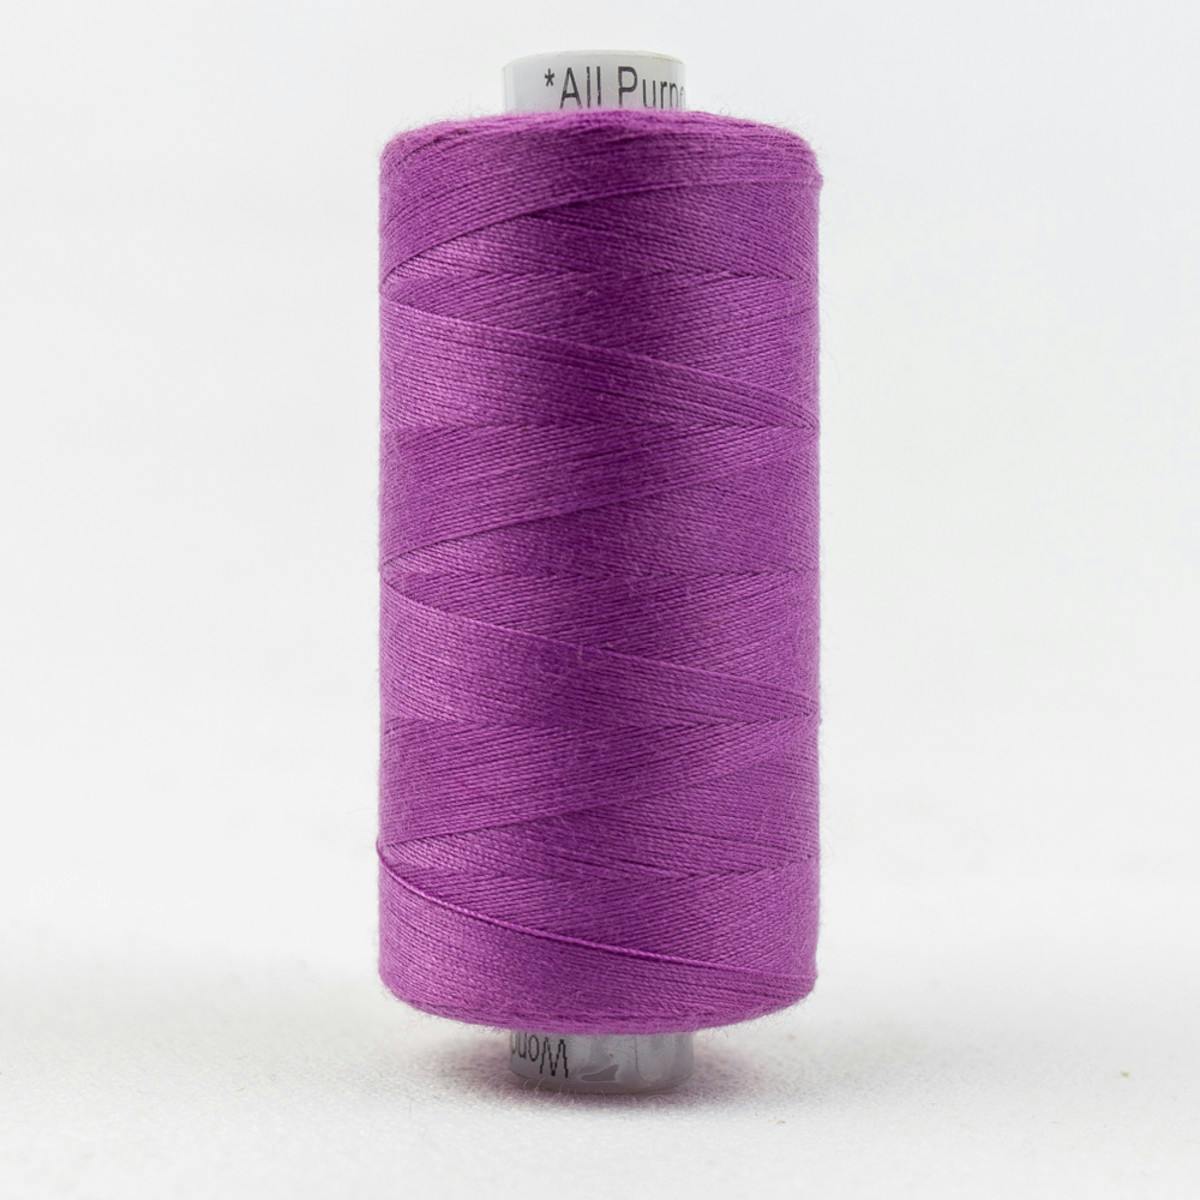 Wonderfil Designer Exotic Purple (DS192)